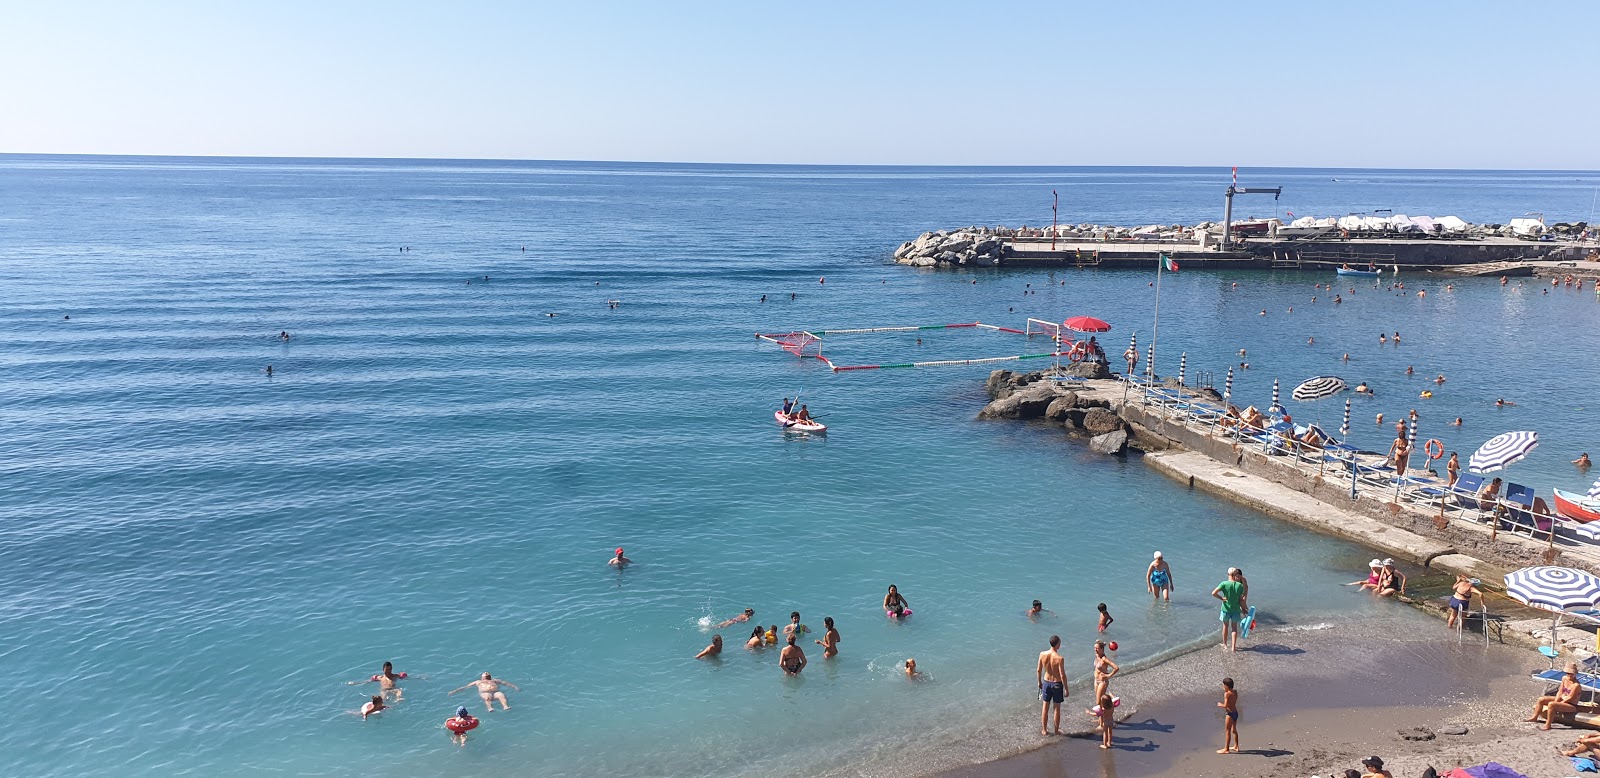 Photo of Spiaggia di Bogliasco with straight shore